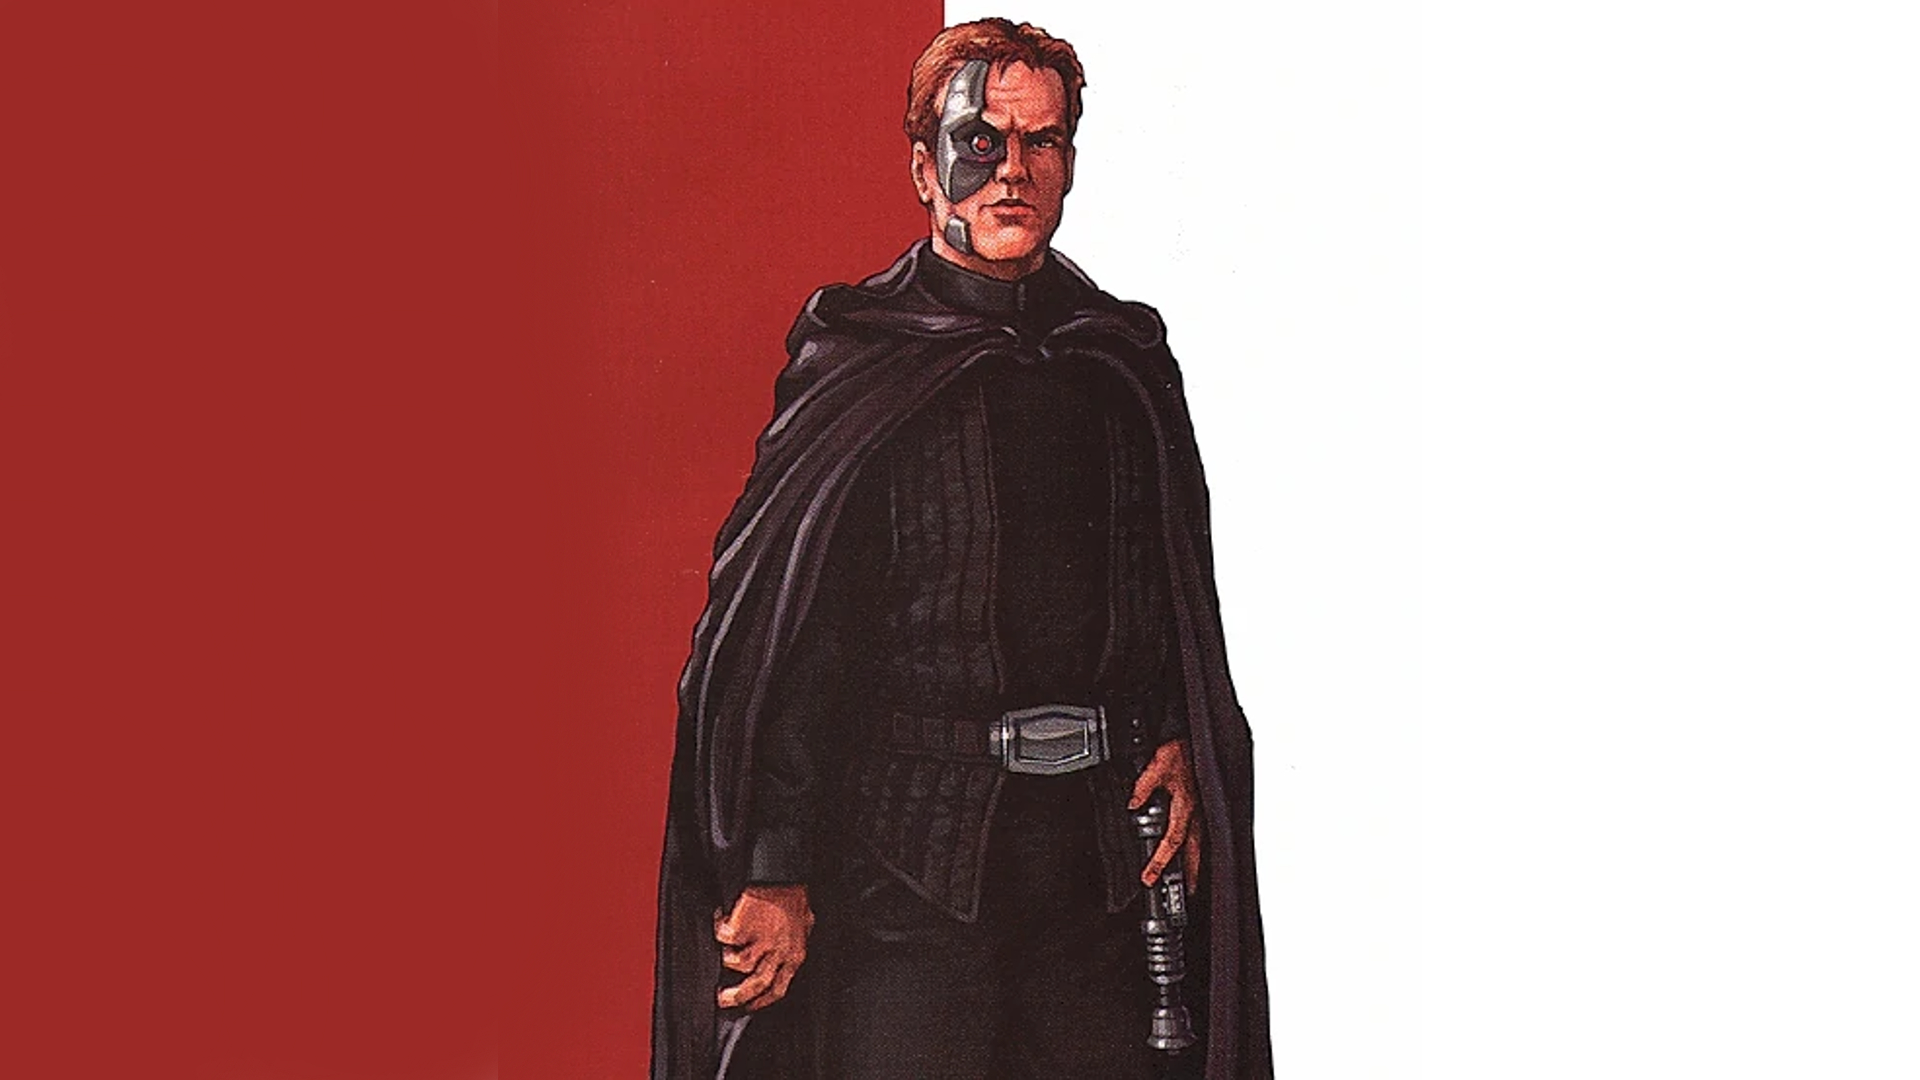 Darth Vader apprentice -Antinnis Tremayne